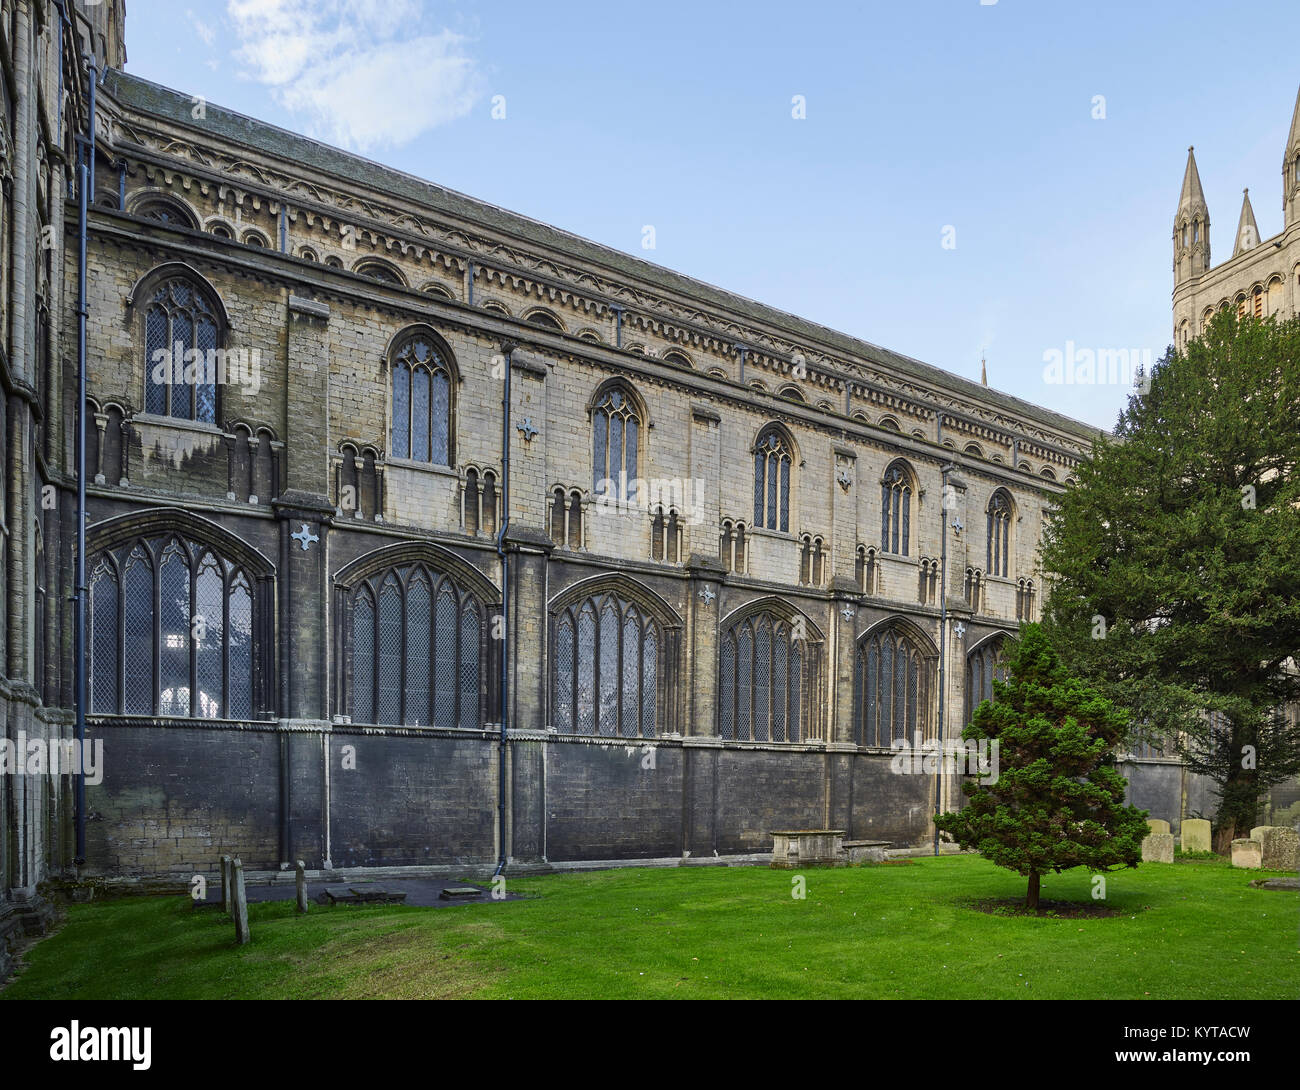 La catedral de Peterborough. Nave exterior desde el norte mostrando tracerías en las ventanas. A finales del siglo XII, Norman. Foto de stock